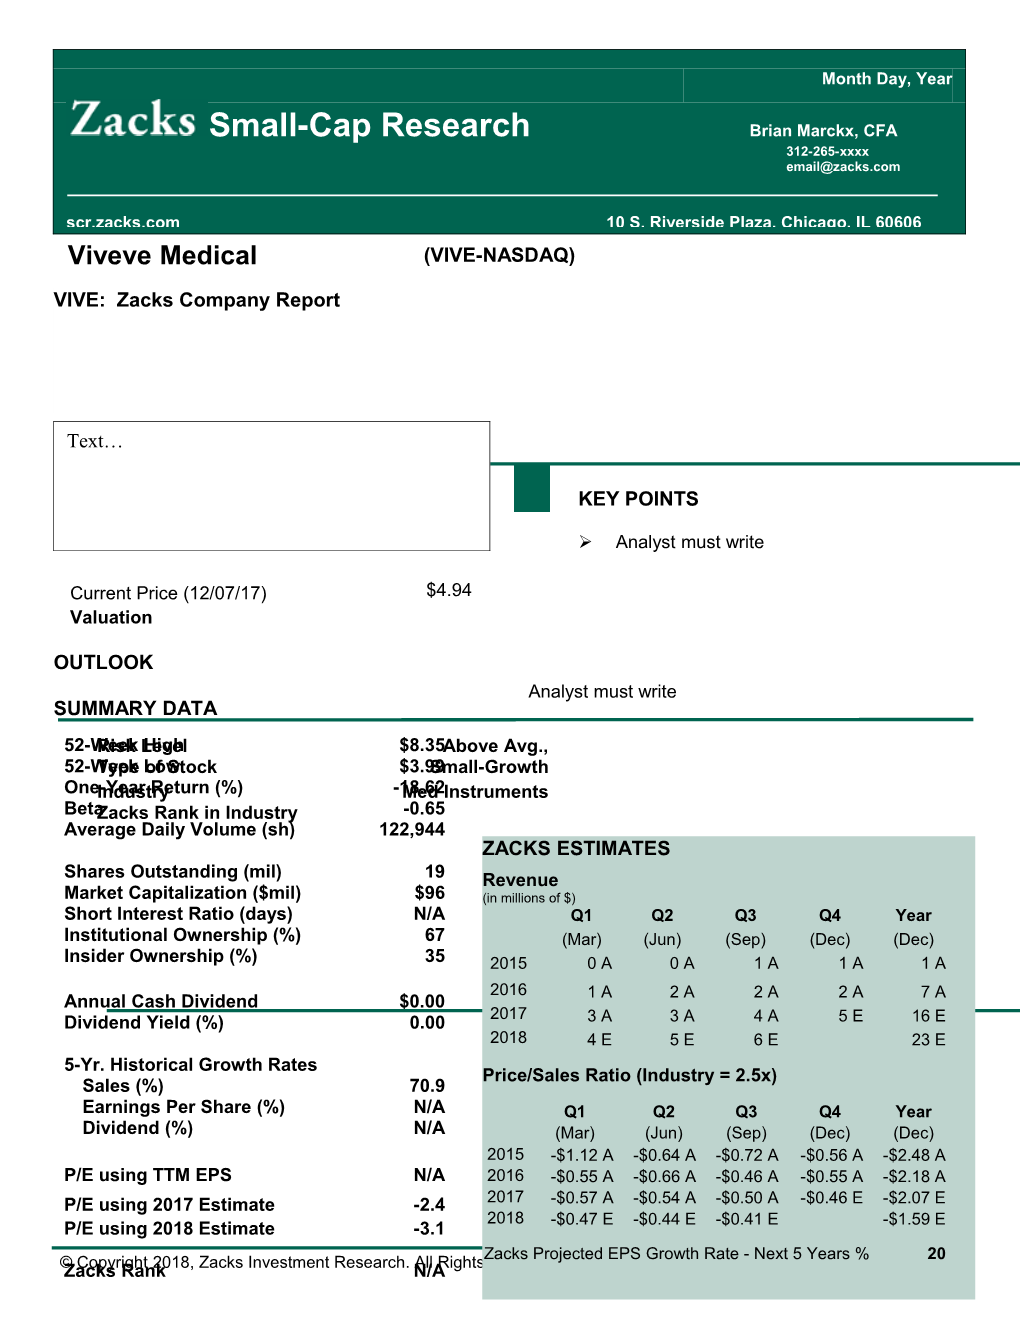 Viveve Medical / (VIVE-NASDAQ) Current Price (12/07/17) / $4.94 Valuation OUTLOOK